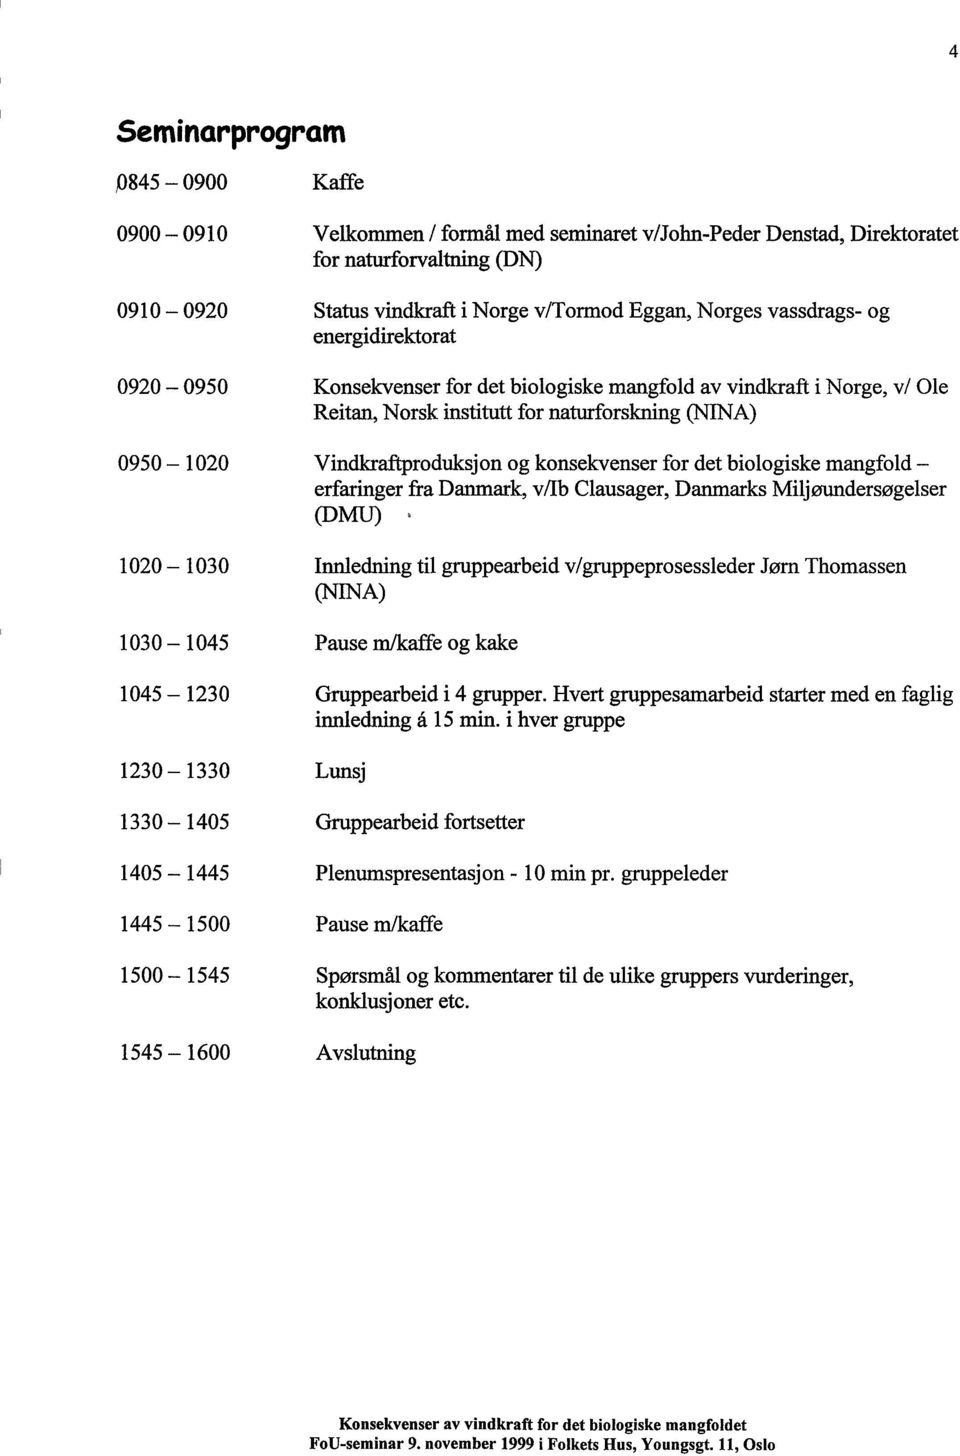 konsekvenser for det biologiske mangfold - erfaringer fra Danmark, v/ib Clausager, Danmarks Miljøundersøgelser (DMU) 1020-1030 Innledning til gruppearbeid v/gruppeprosessleder Jørn Thomassen (NINA)